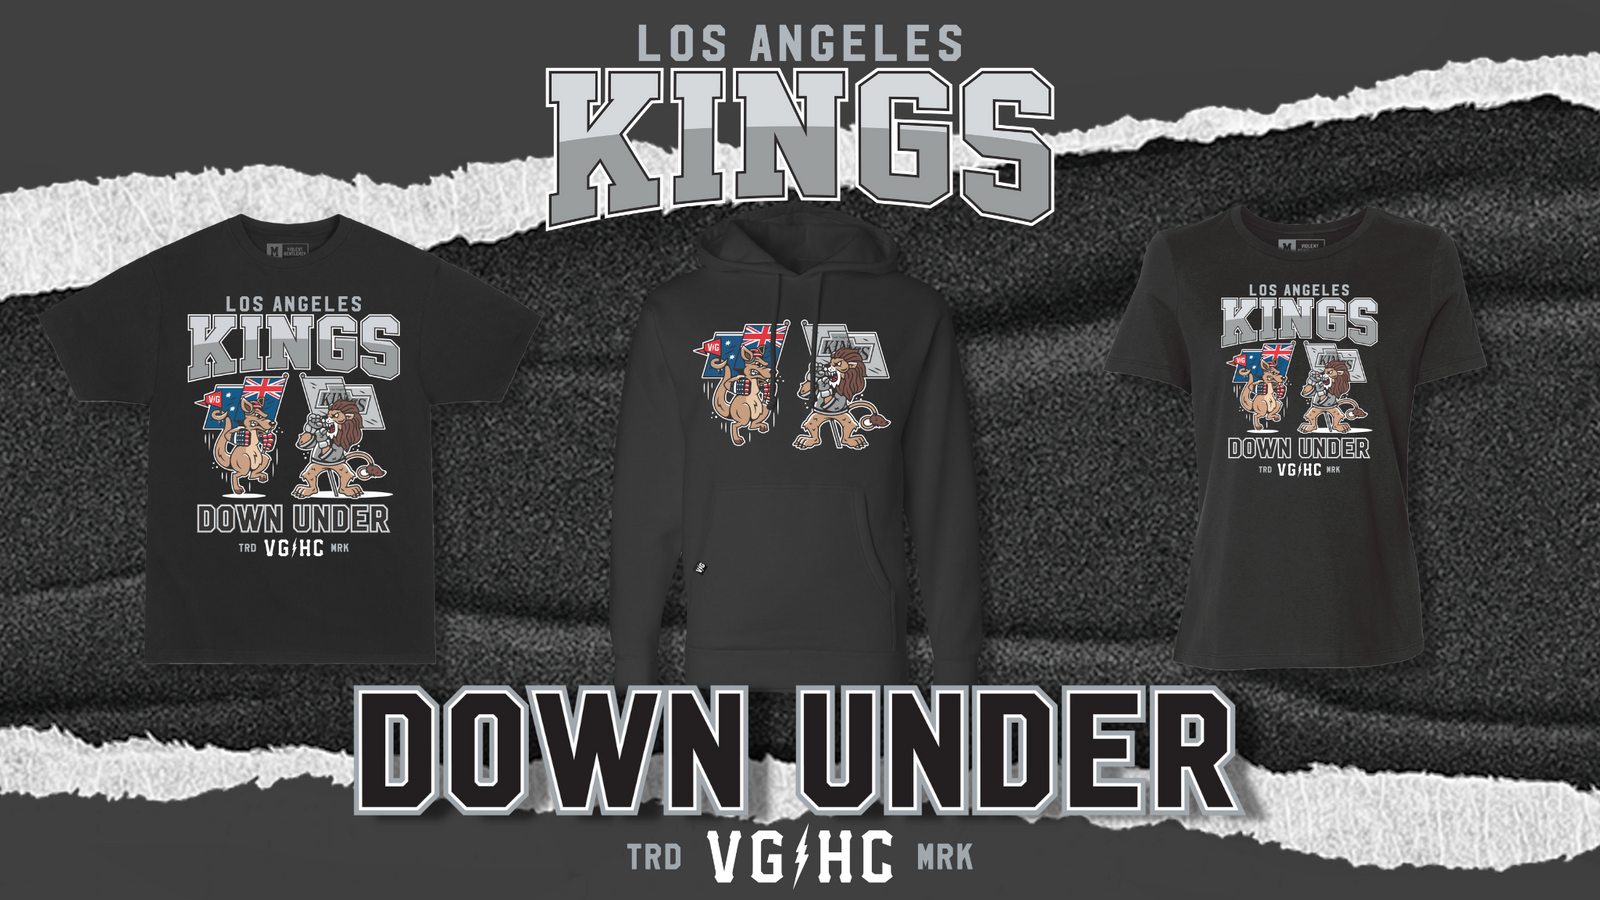 Los Angeles Kings Jerseys in Los Angeles Kings Team Shop 